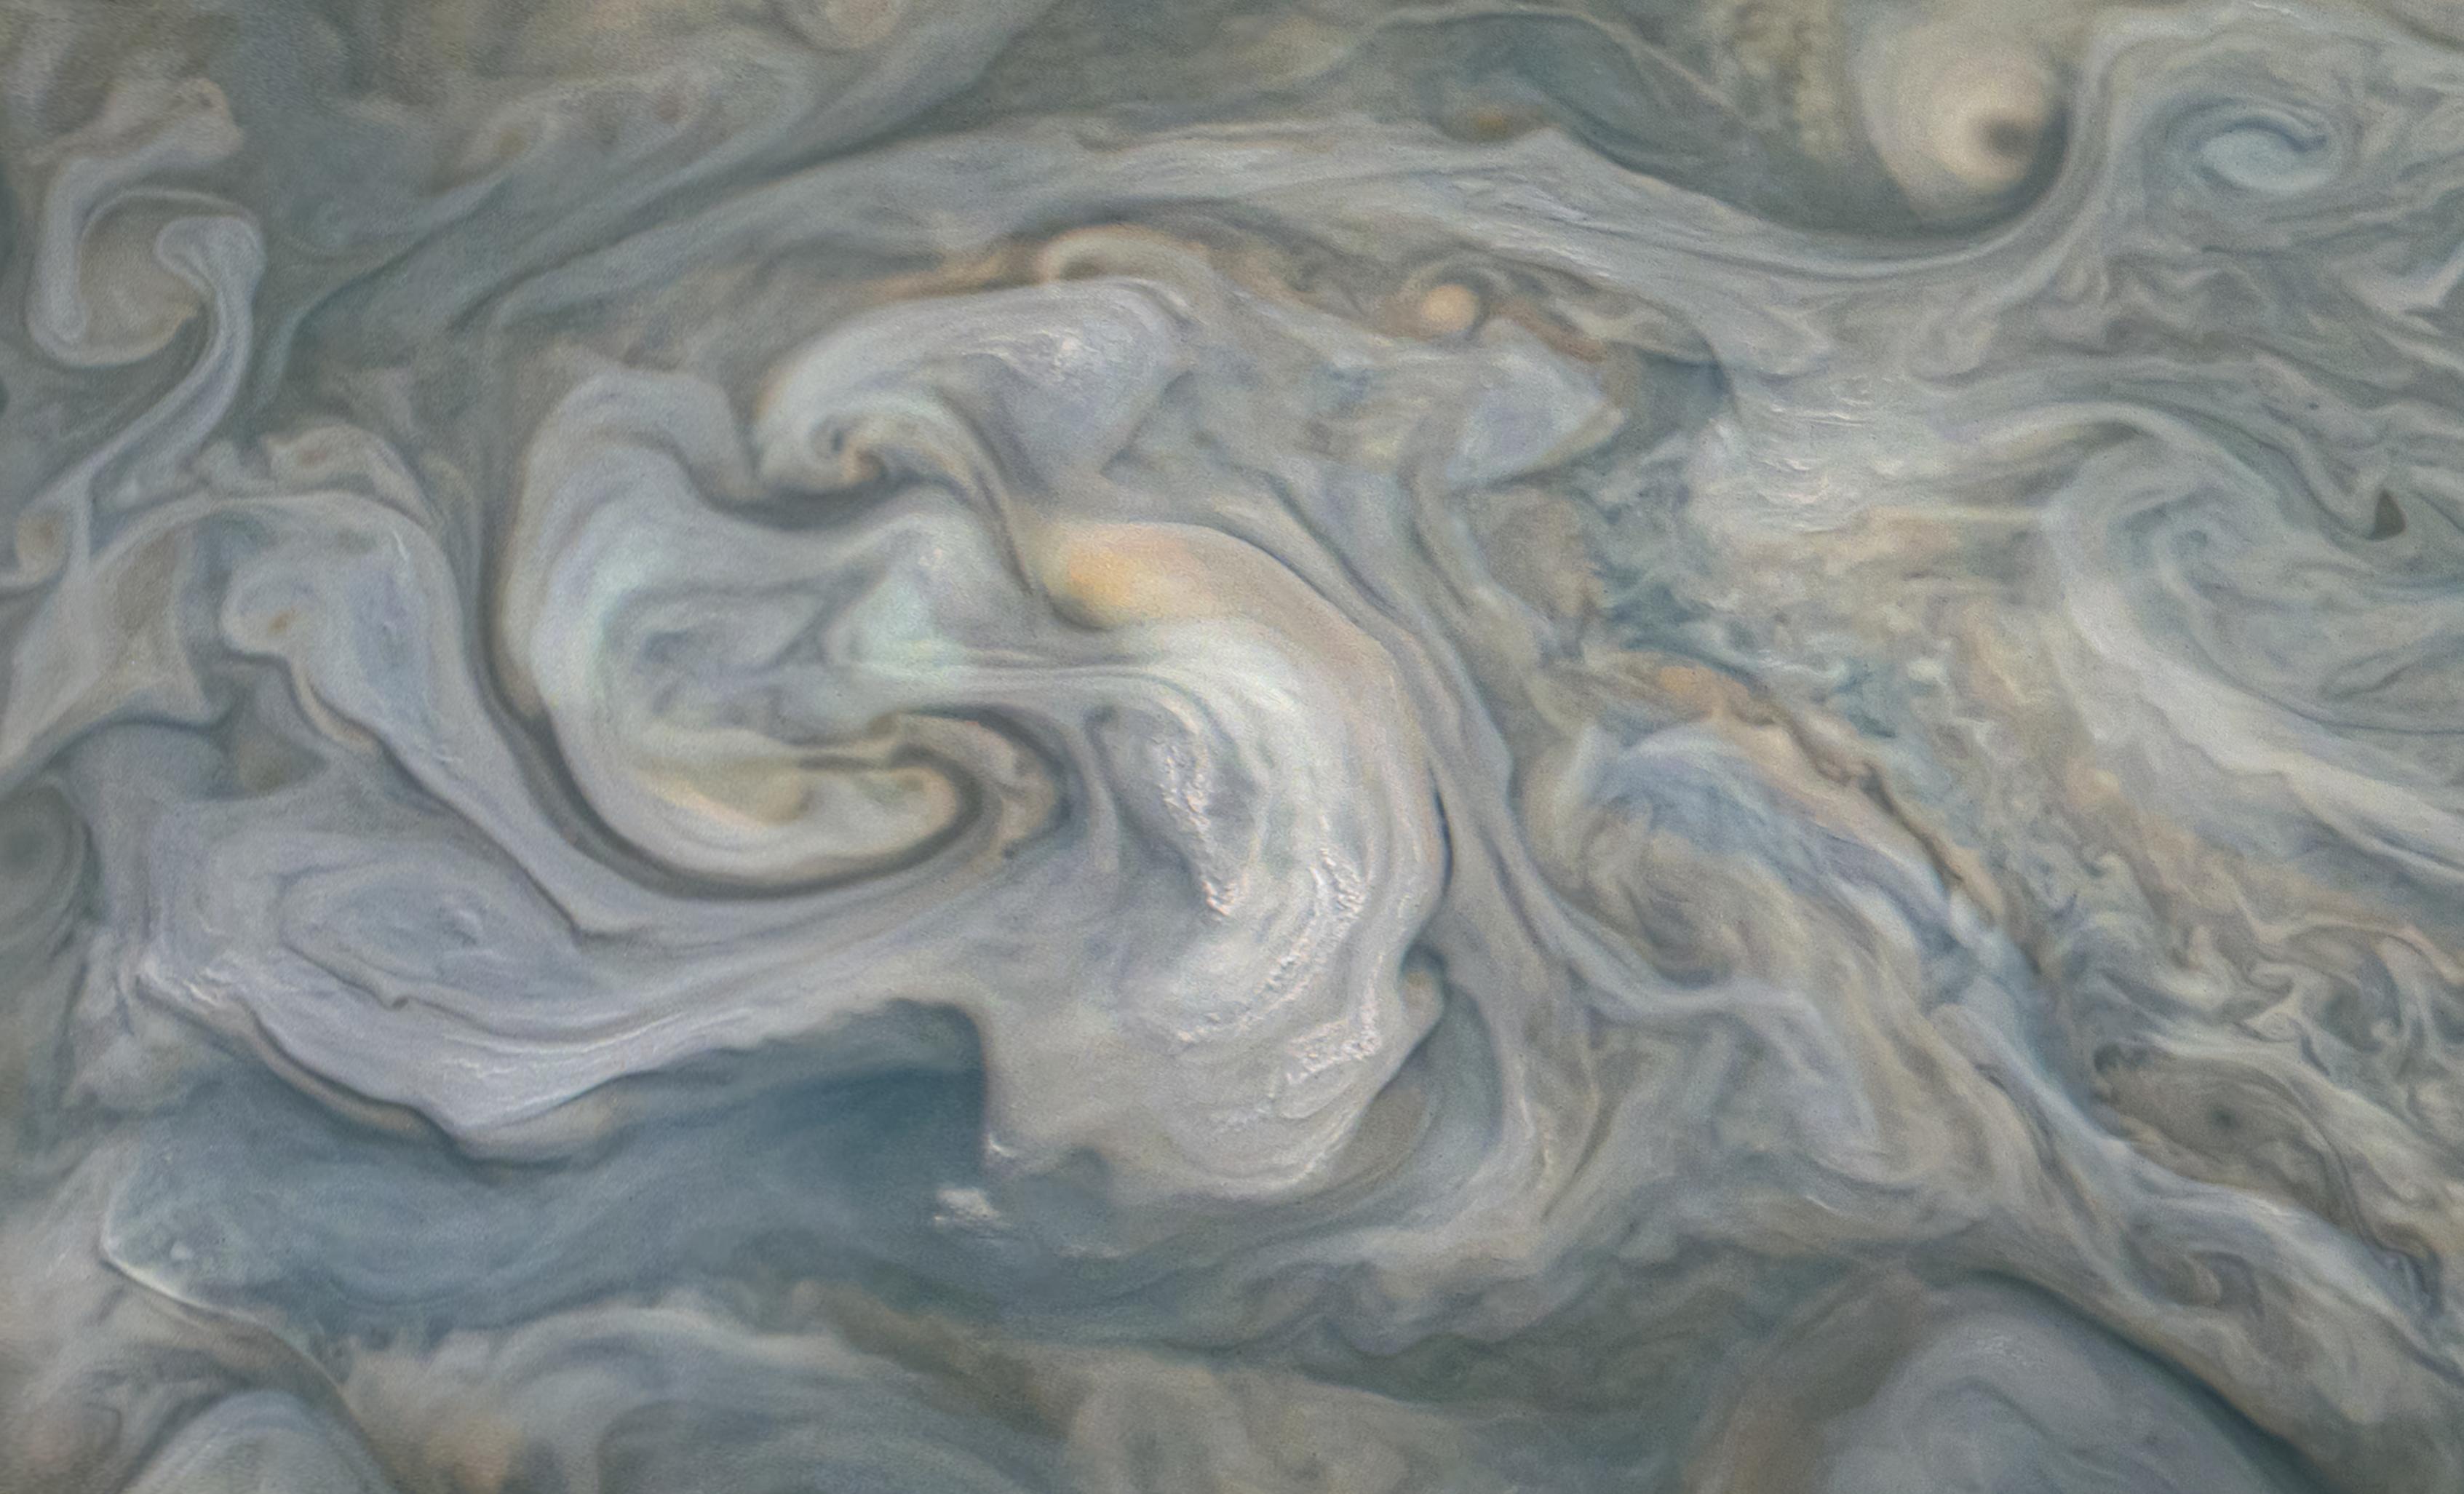 Ammóniás jégesőre és titokzatos villámokra bukkant a Juno a Jupiter légkörében